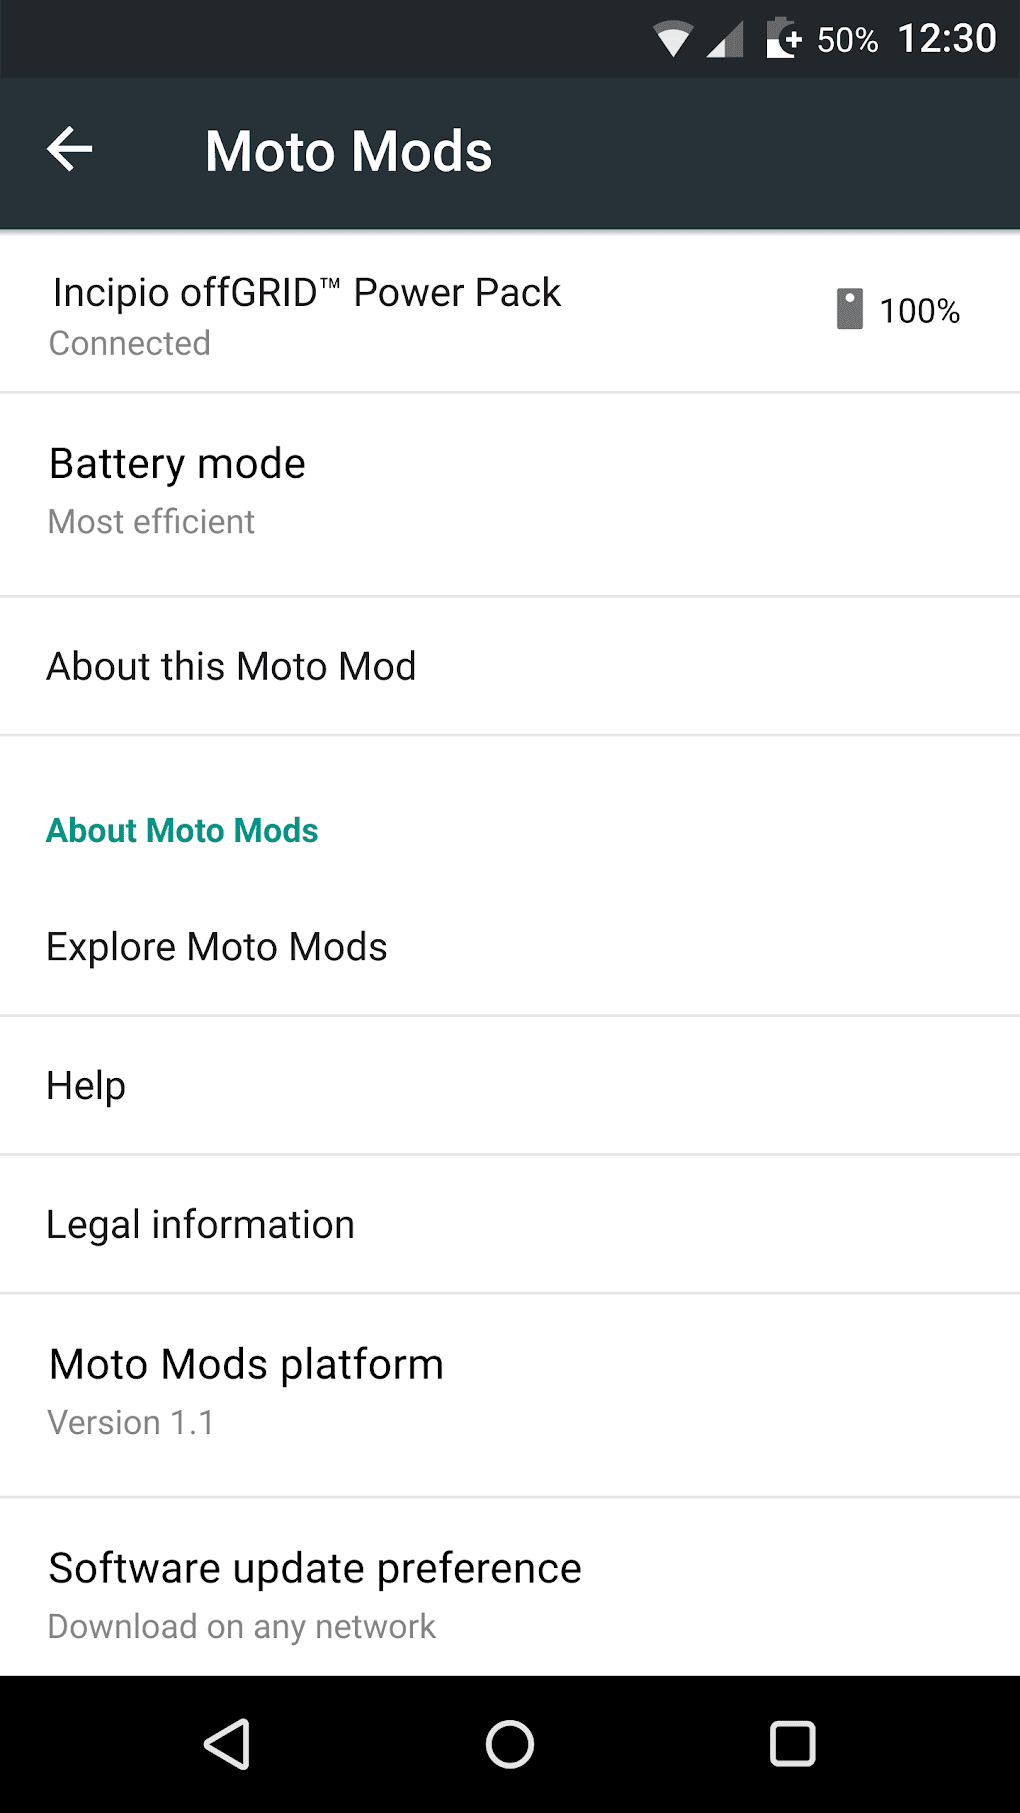 Novo Moto Gametime- O Gerenciador De Jogos Da Motorola Atualizou E Está  Incrível 